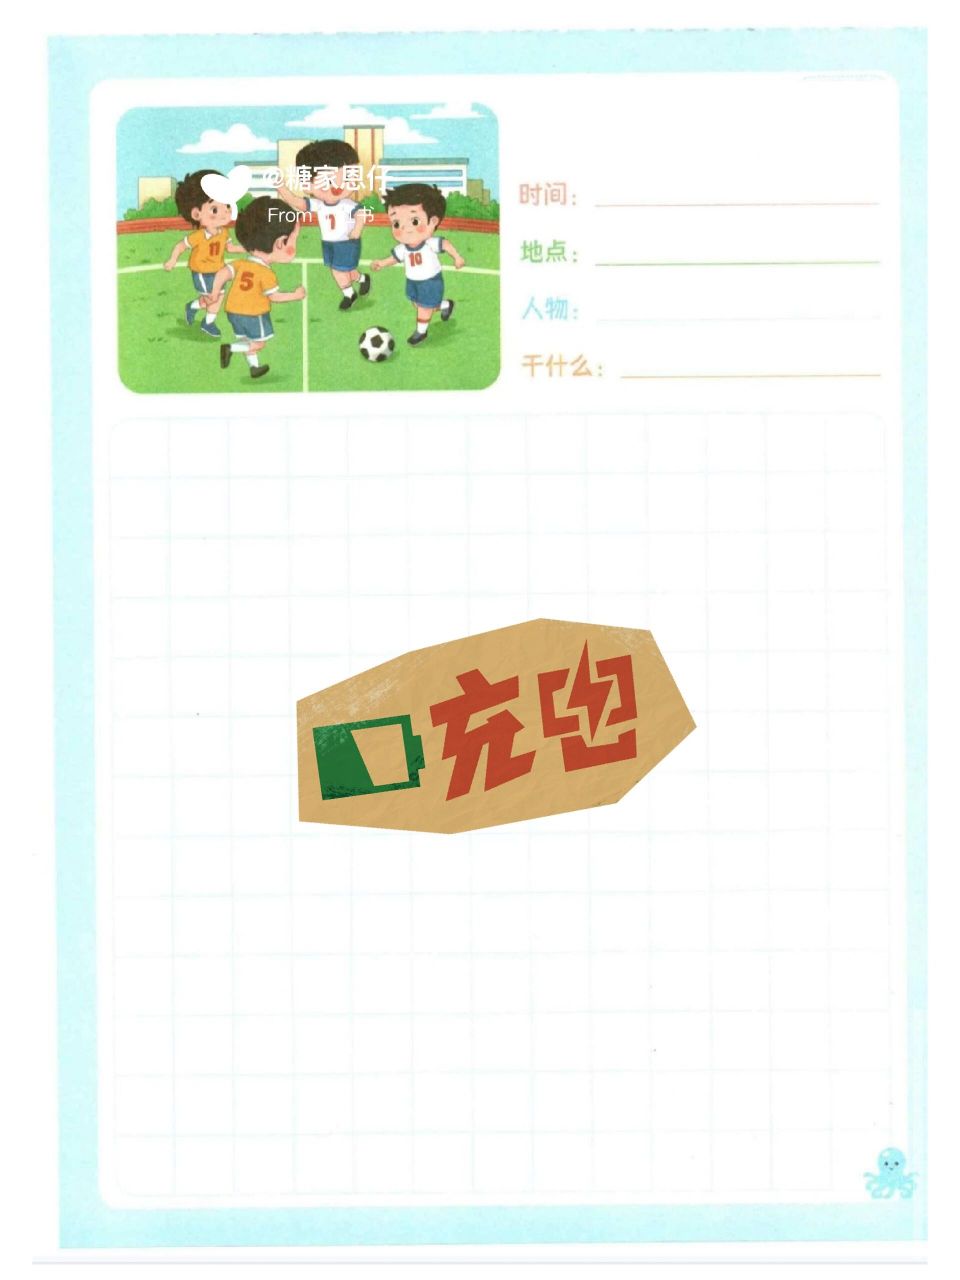 小明在踢足球看图写话图片